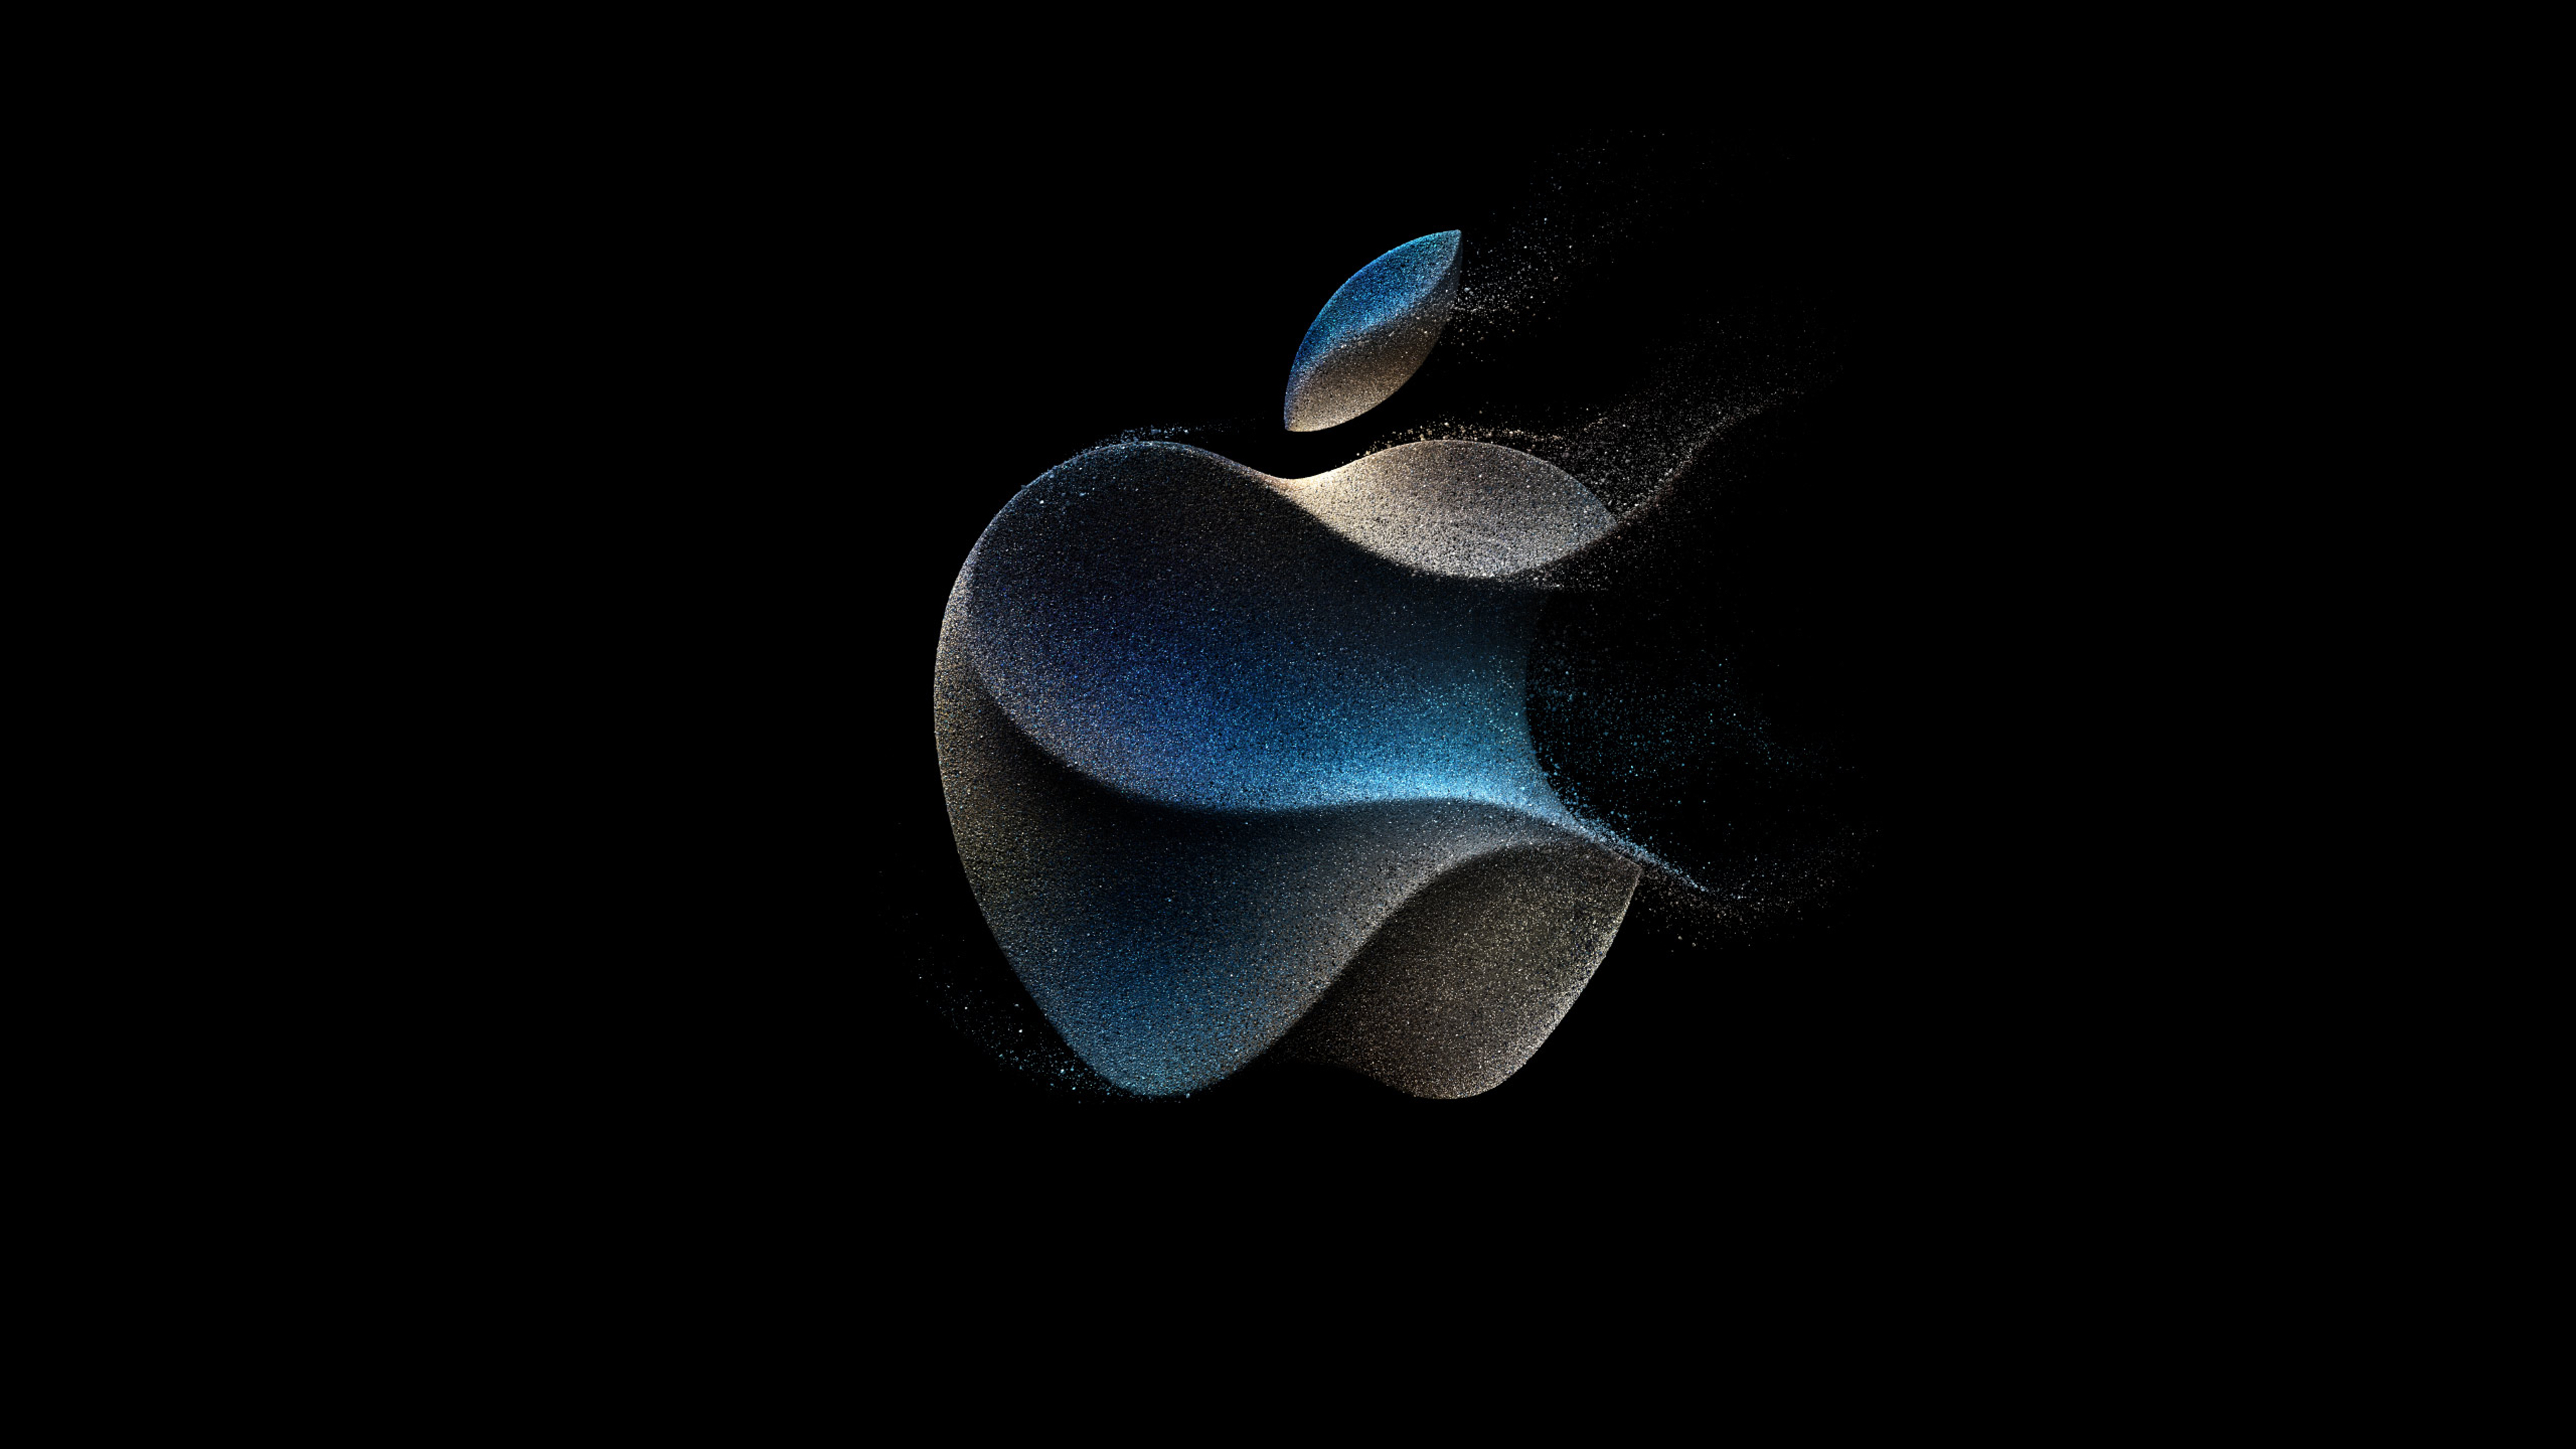 Scarica lo sfondo per iPhone, iPad e Mac dell'evento Apple Wonderlust -  iPhone Italia